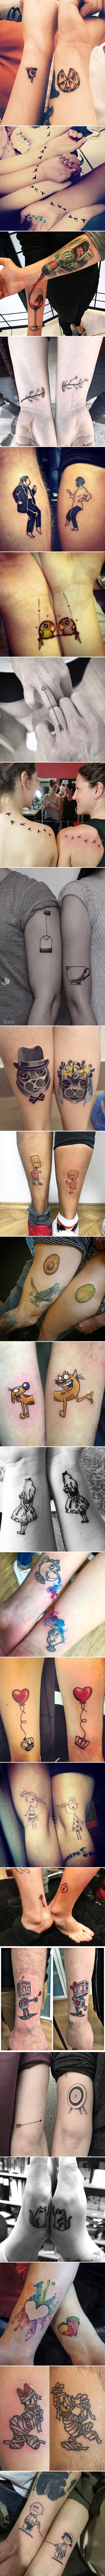 Tetovaže mogu izgledati puno zanimljivije kada učinite ono što su učinili i ovi ljudi